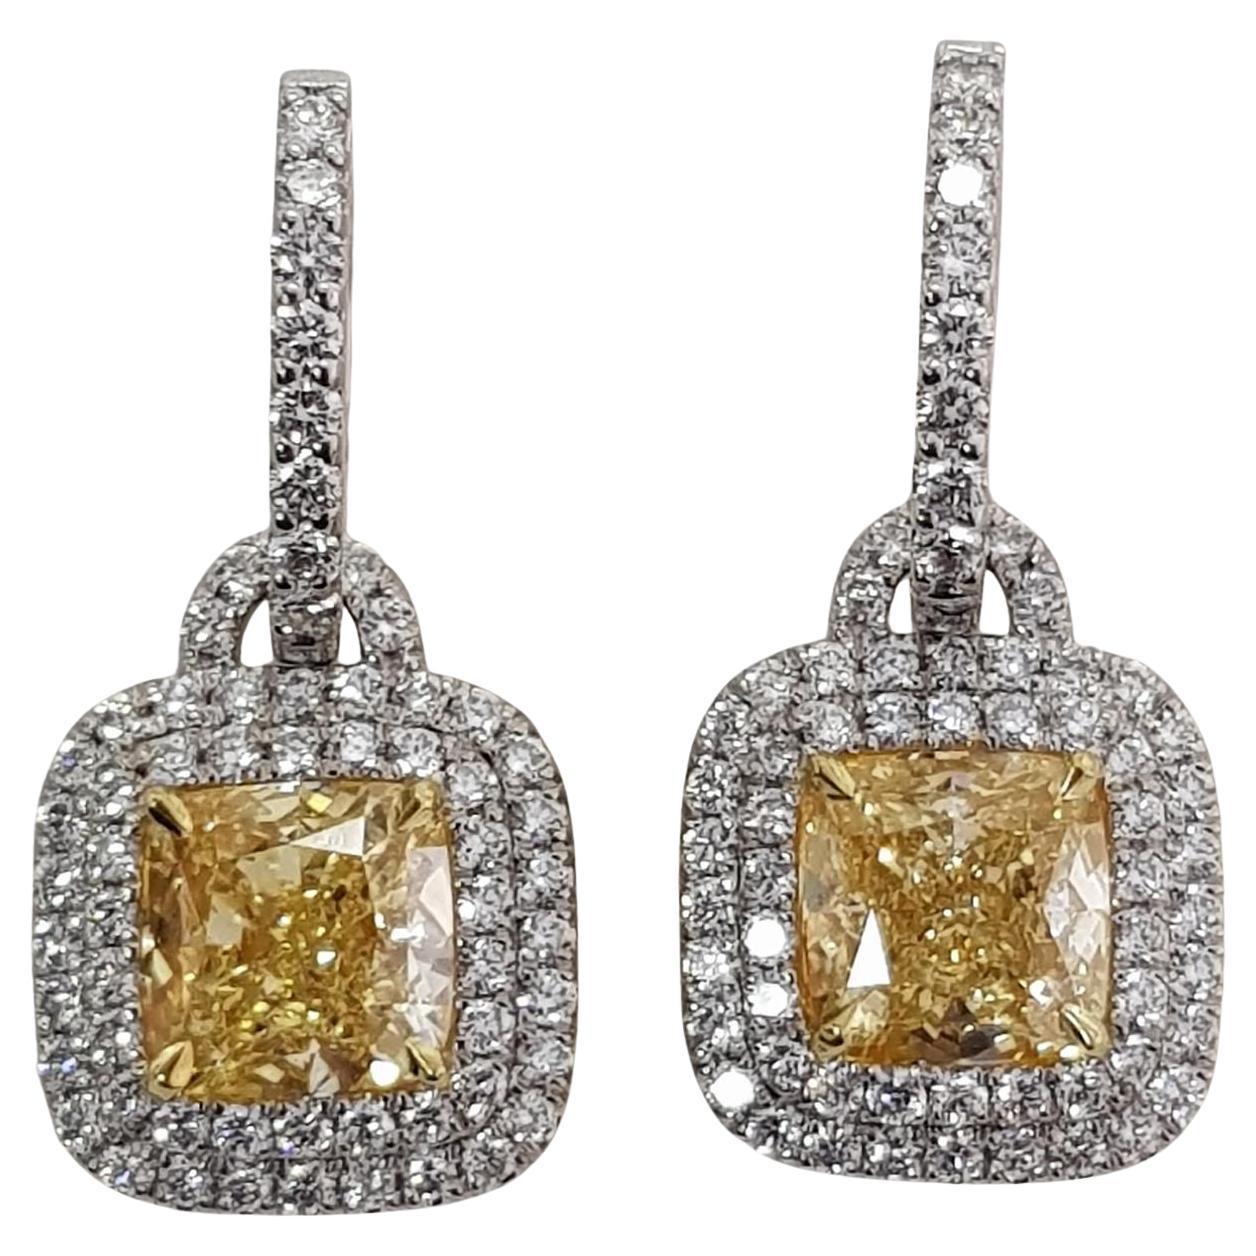 An exquisite Yellow Cushion Diamond earrings 
5 carats
GIA certified
VVS2 Clarity